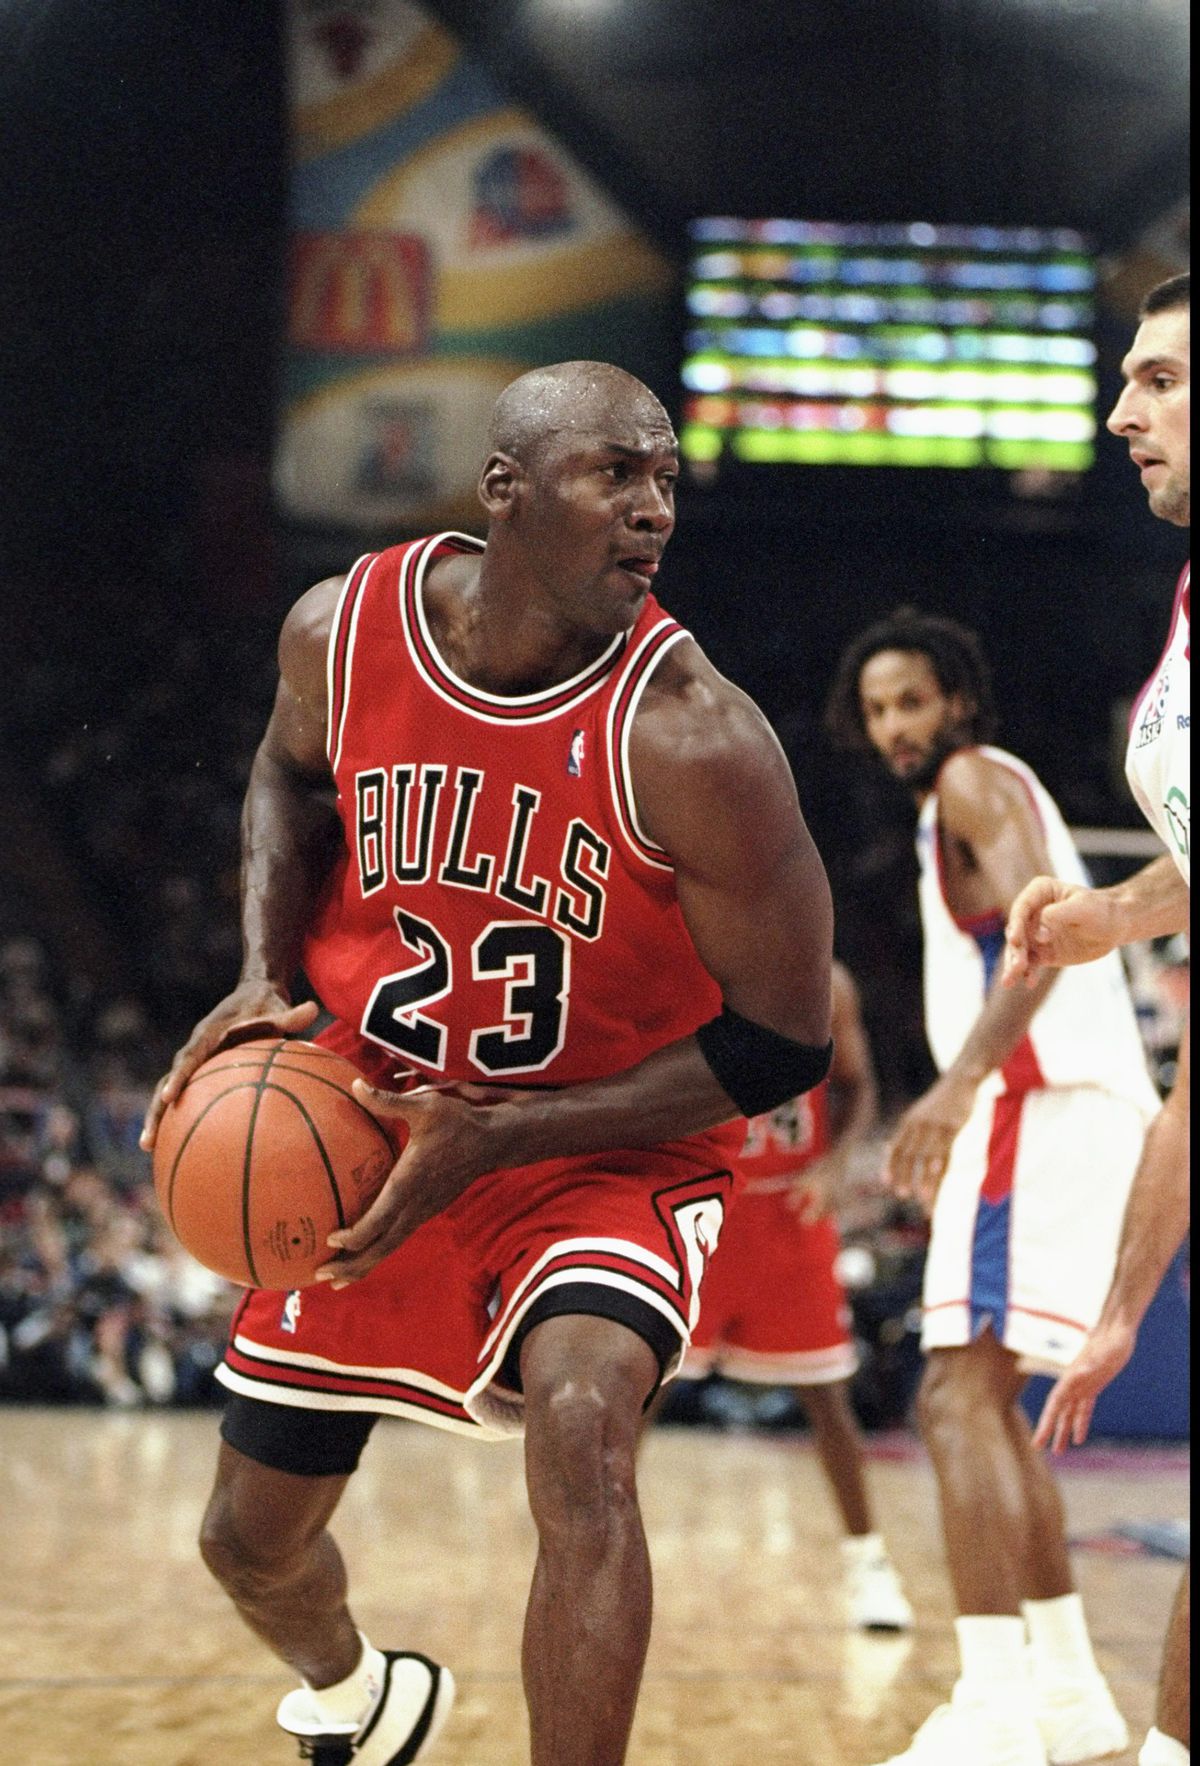 VIDEO Ziua în care Michael Jordan și-a umilit un rival » A aruncat cu ochii închiși la coș: „E pentru tine, iubire!”